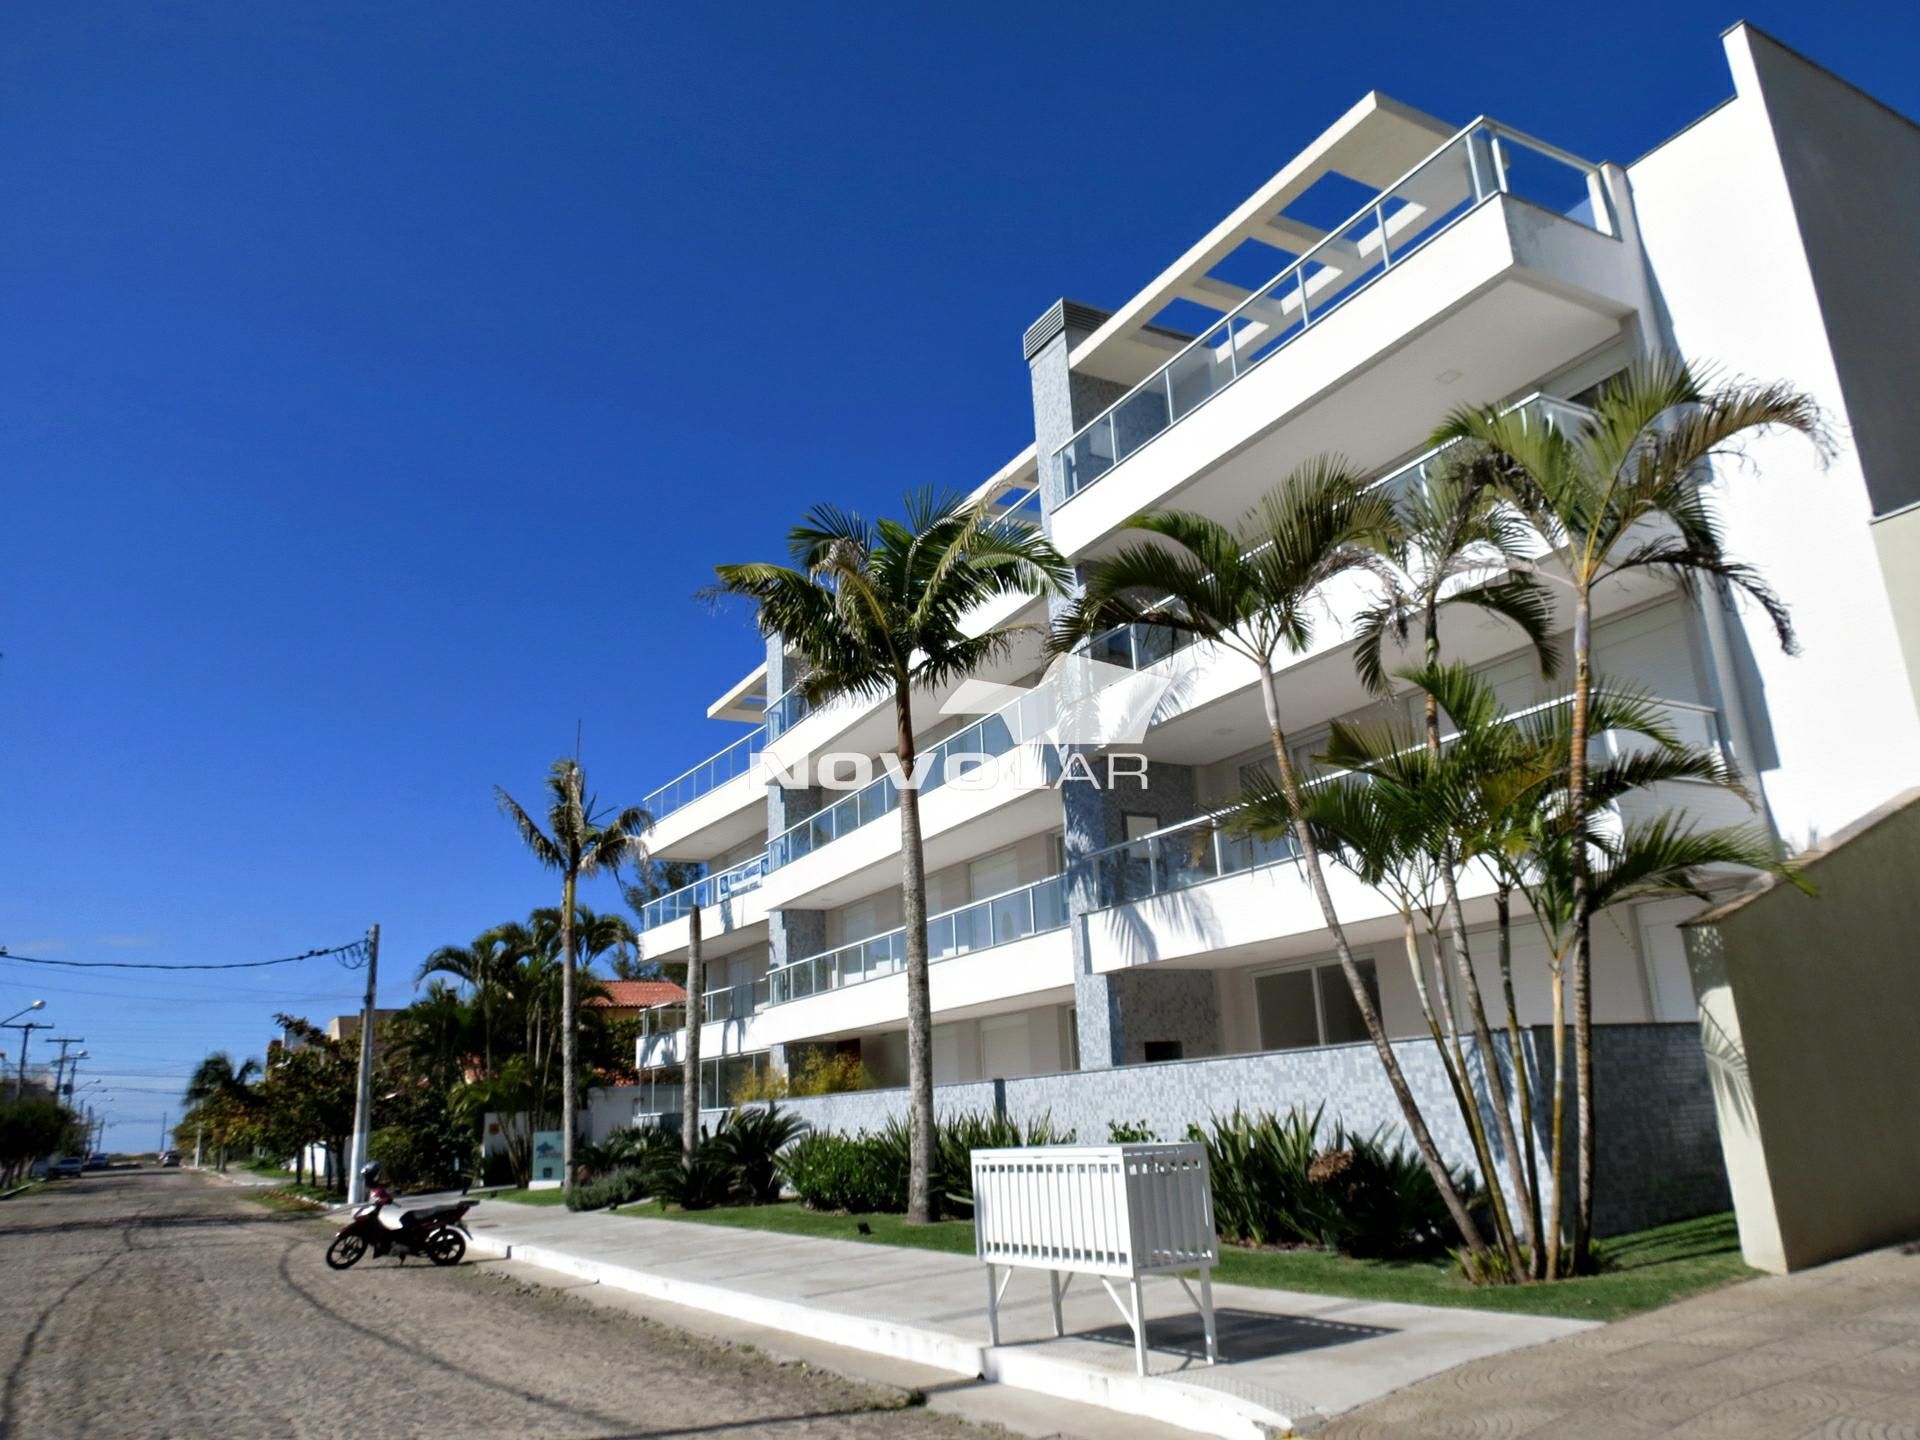 Cobertura com 2 dormitórios em Torres, no bairro Praia Grande à venda